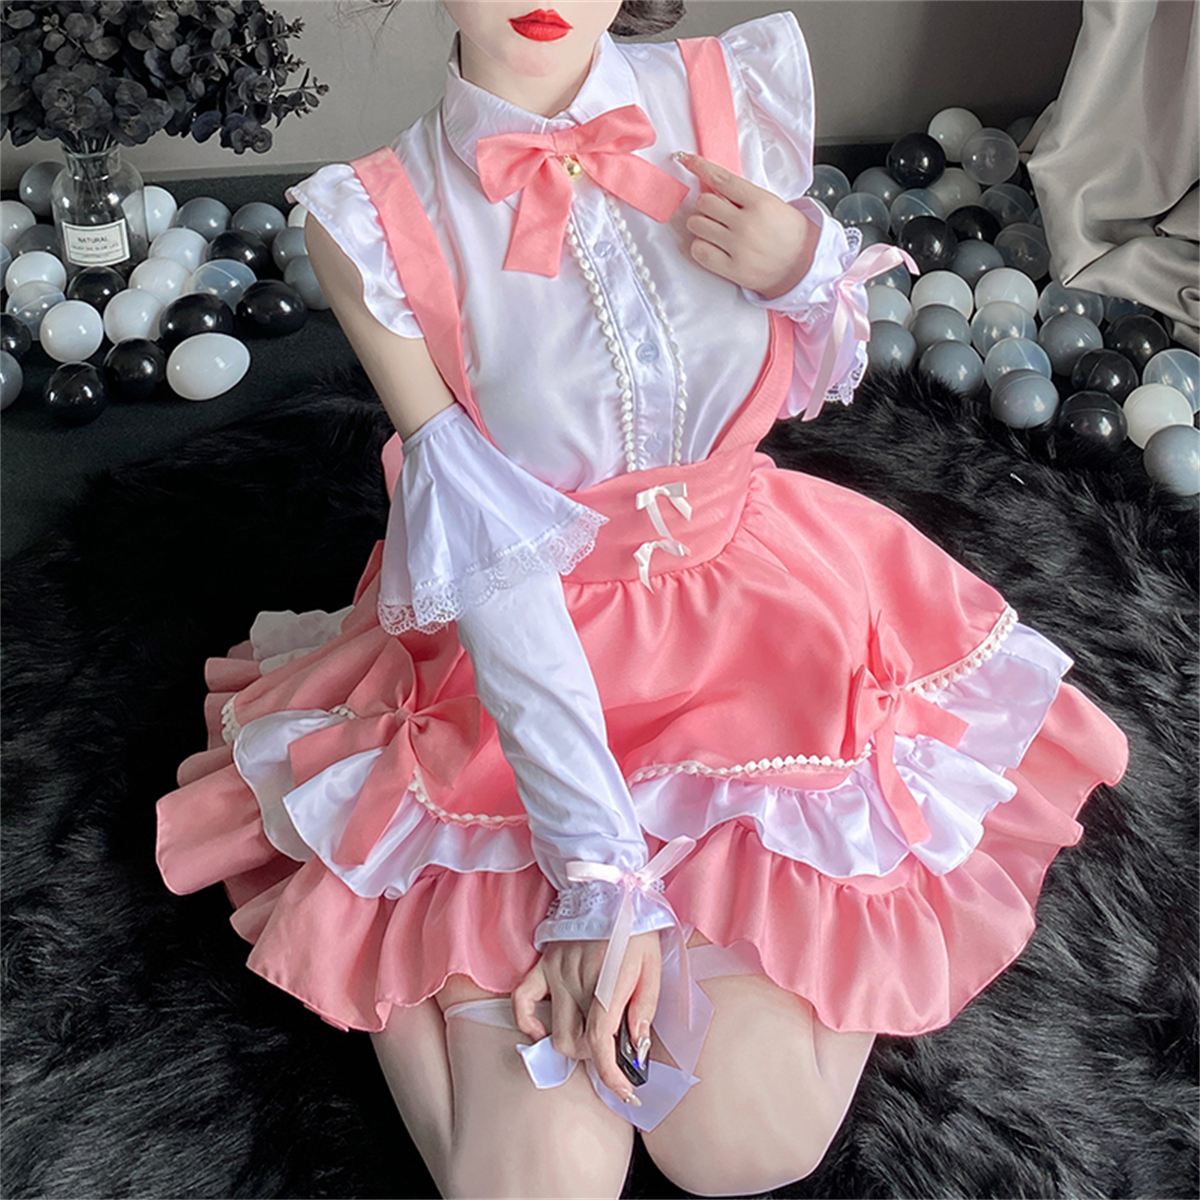 cutie：Lolita连衣裙洛丽塔裙子二次元cos可爱女佣软妹猫咪白丝女